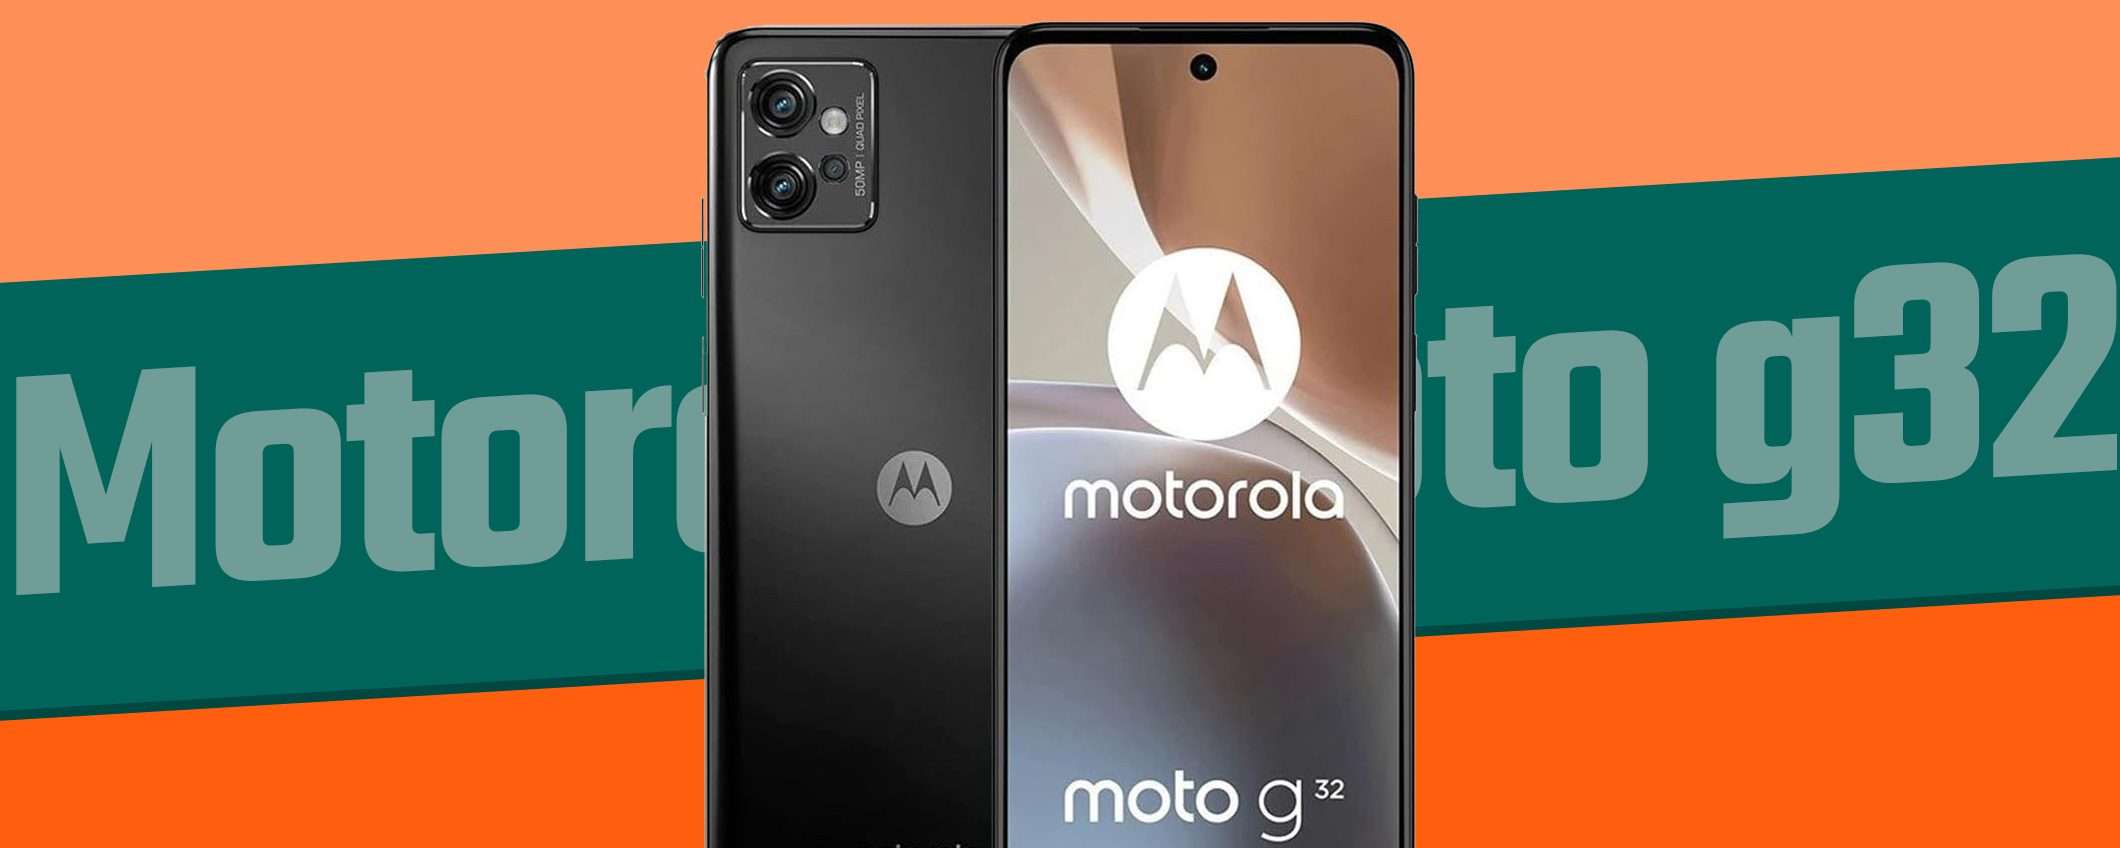 Motorola moto g32: OCCASIONE a 98€ del Black Friday